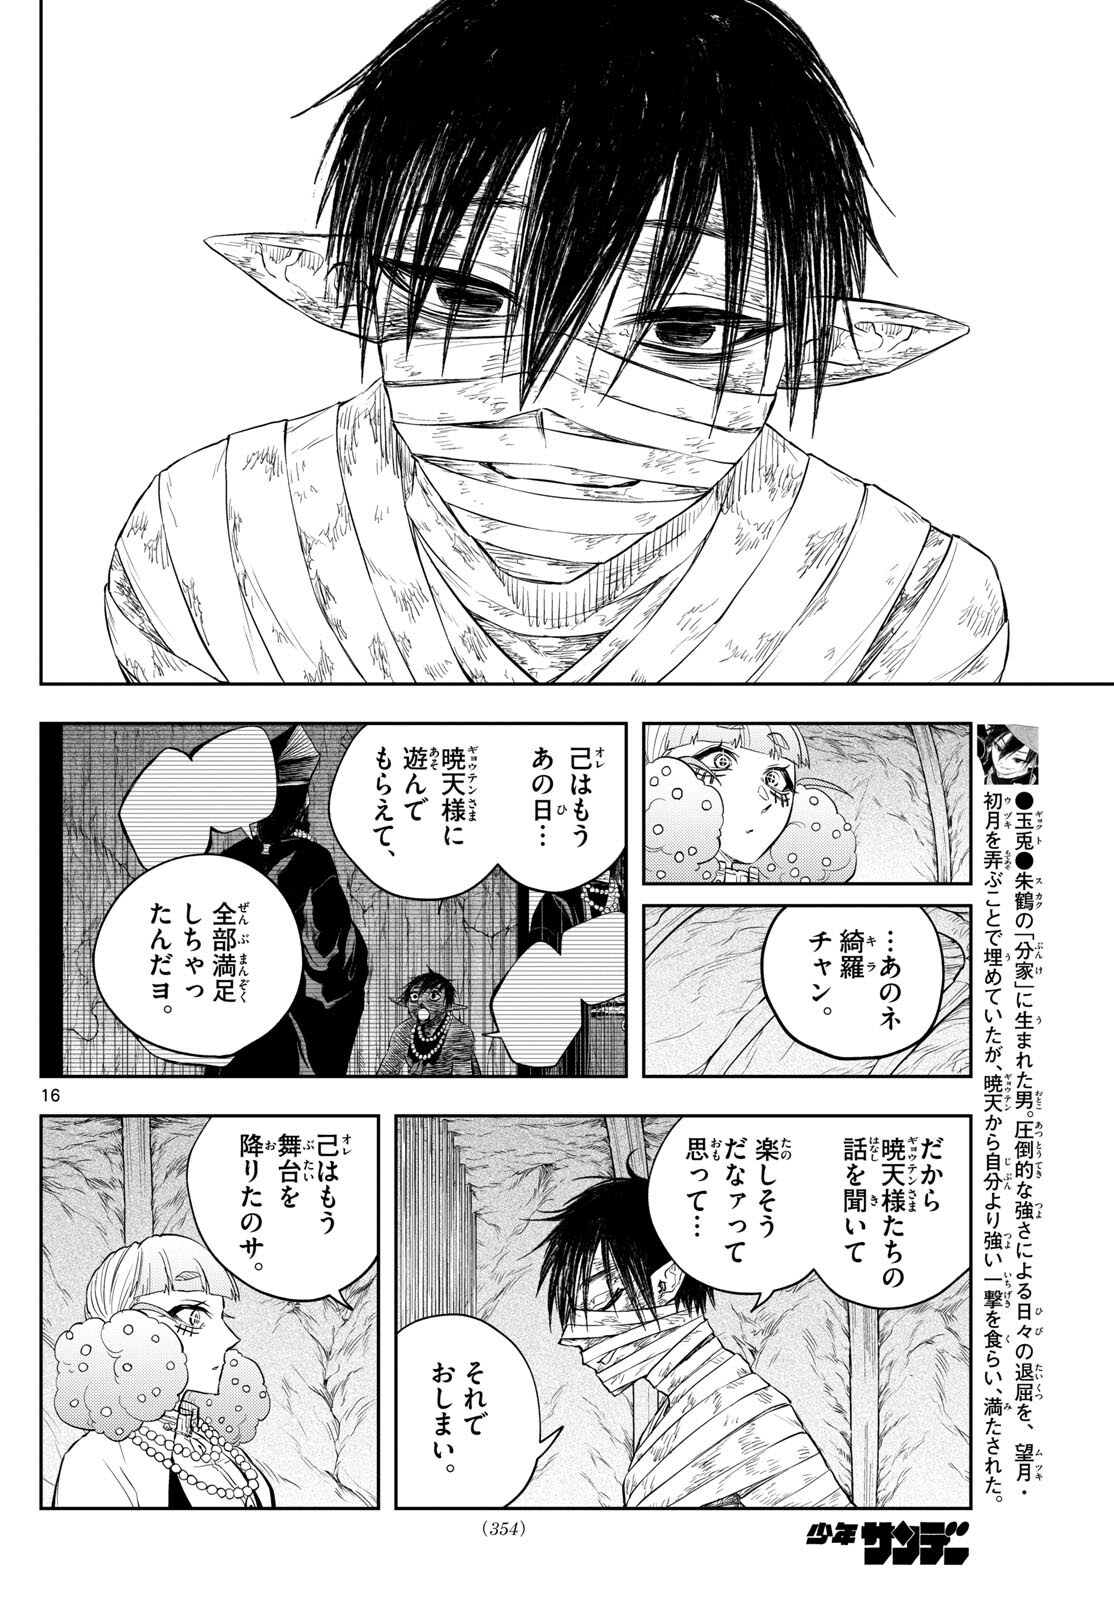 Akatsuki Jihen - Chapter 42 - Page 16